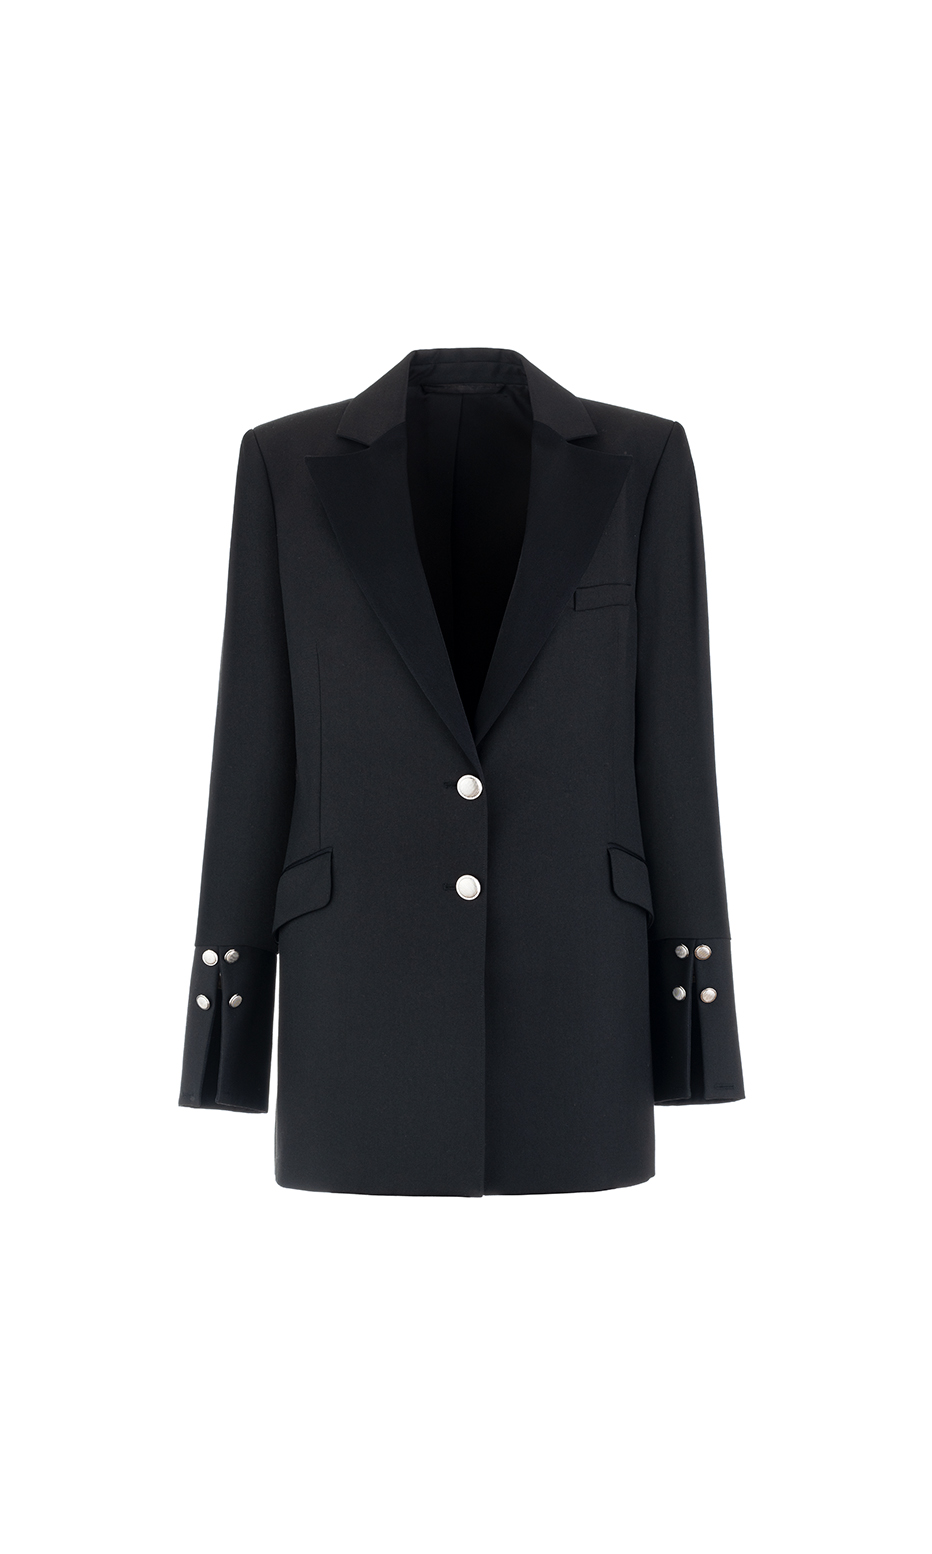 black structured blazer